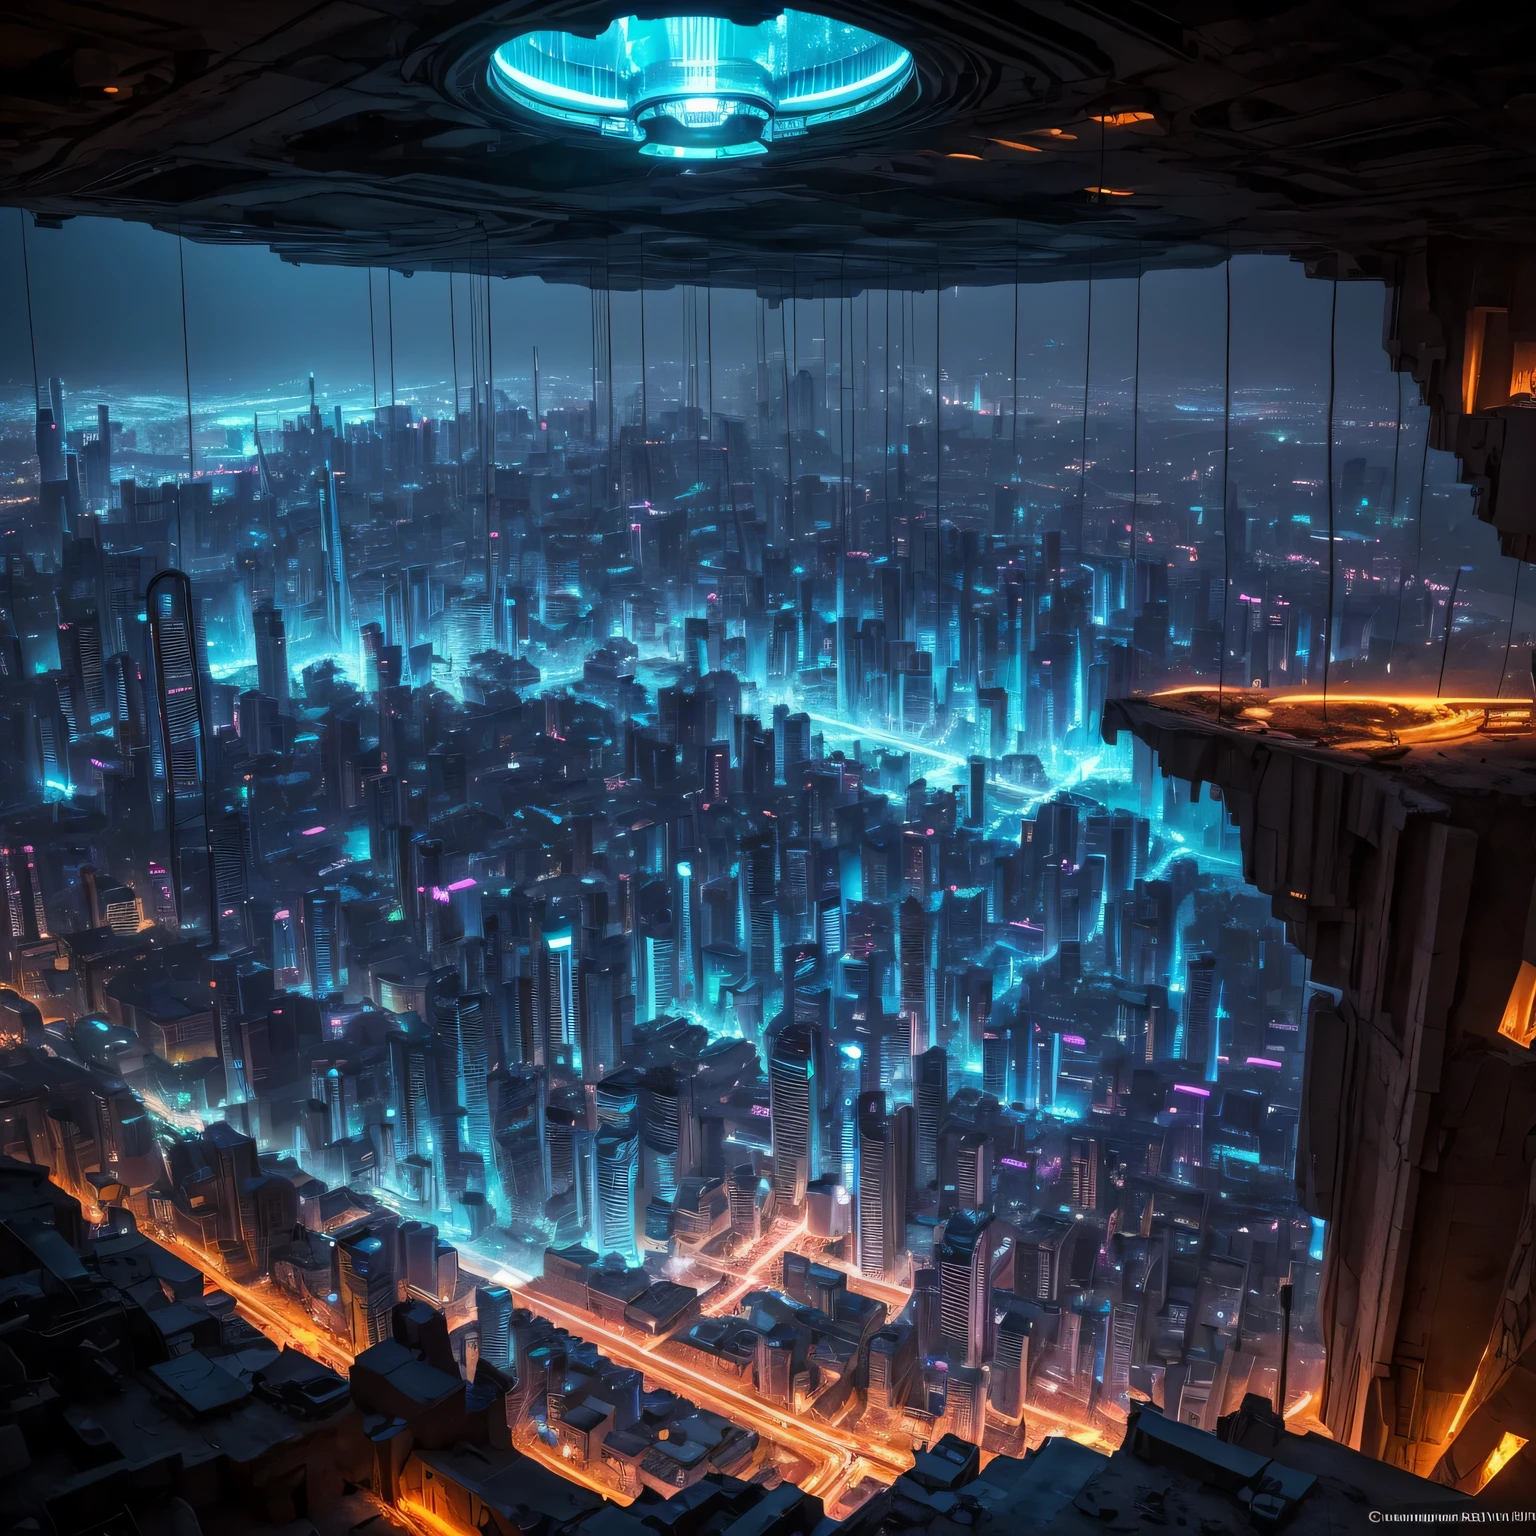 地下場所, 地下深處一個巨大的洞穴裡矗立著另一個文明的高科技城市.., 霓虹燈和照明, 發光電纜和光導, 機器人和高科技外星技術是可見的, 飛行汽車盤旋在城市上空, 光的組合, 鍍鉻和奇妙的技術, 外星城市, 從100公尺高空俯瞰城市, emphasis on 地下場所, 昏暗的灯光, 暮, 超寫實, 為國際地下展覽廢棄場所進行專業攝影, 佳能 EOS 6D Mark II RF 14-35mm F4L IS USM